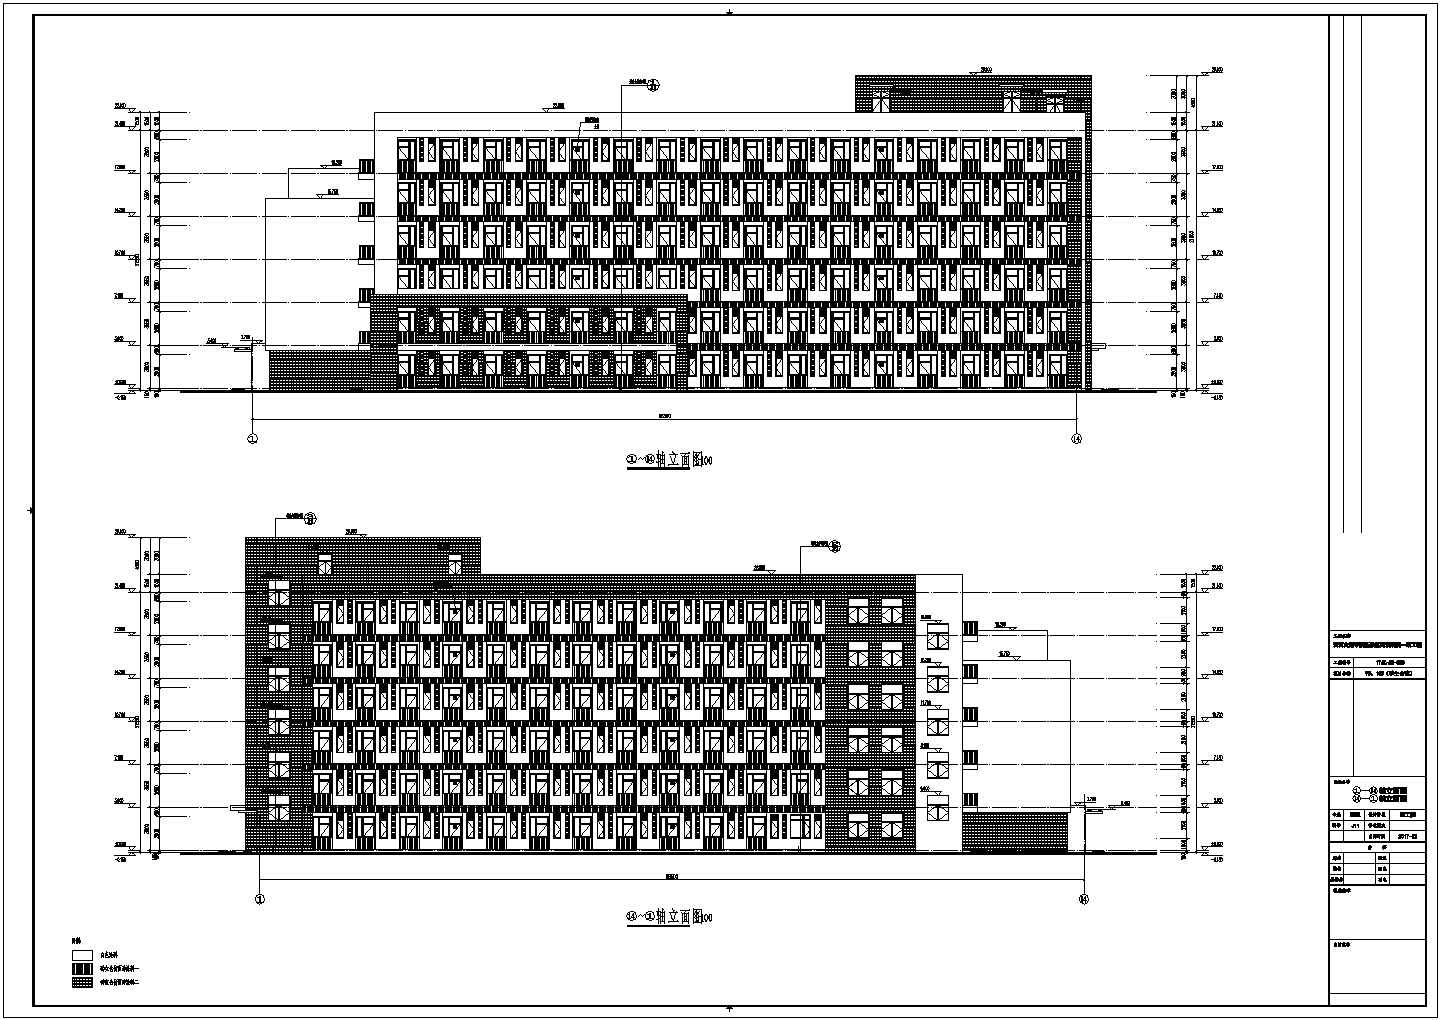 学院6层框架结构学生公寓（男生）建筑、给排水设计施工图（建筑面积16620平方米）